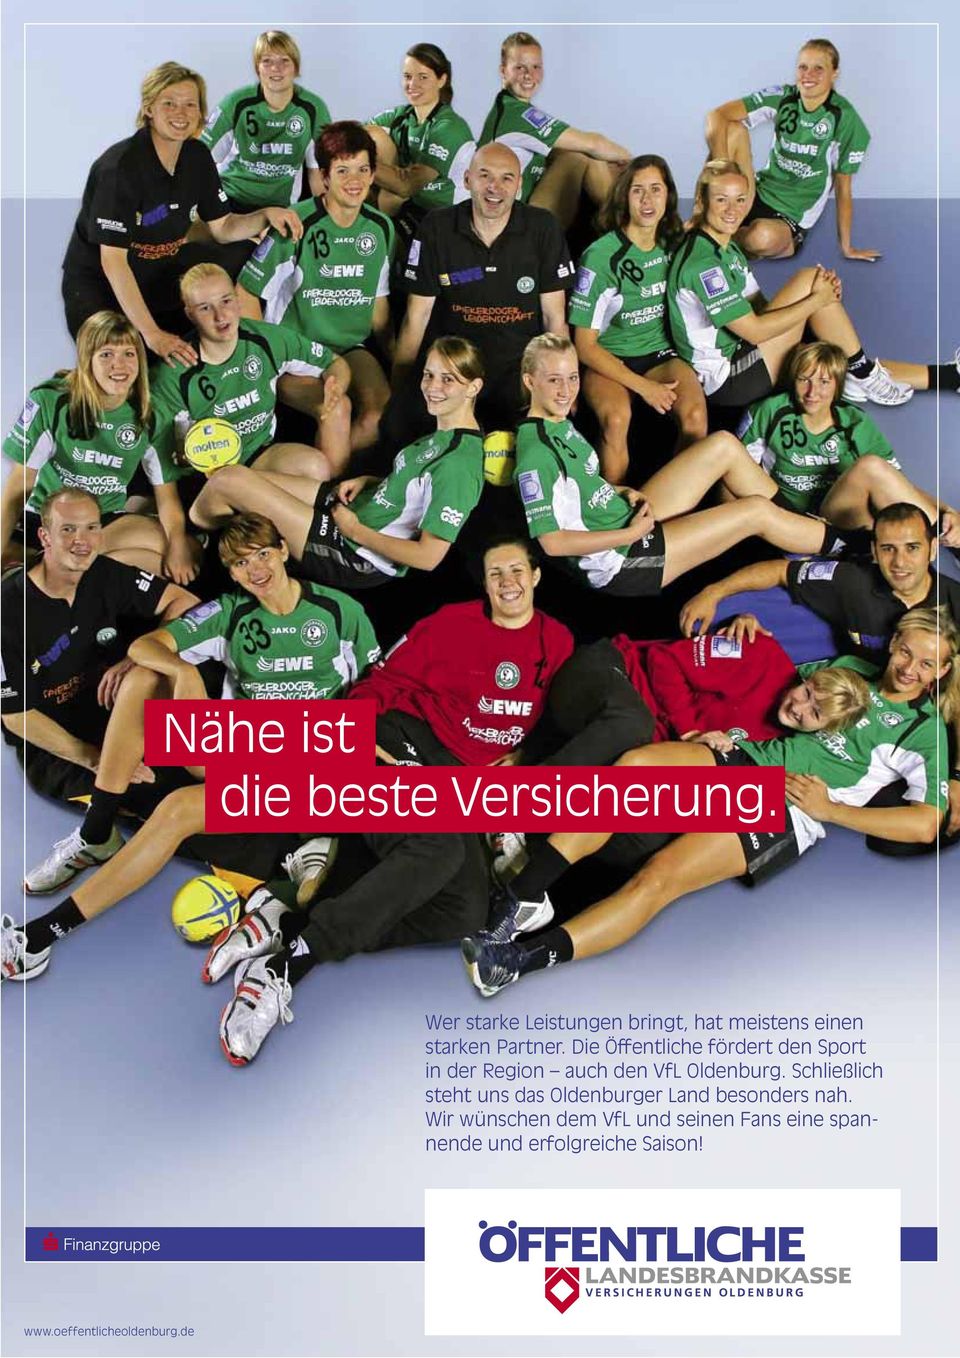 Die Öffentliche fördert den Sport in der Region auch den VfL Oldenburg.